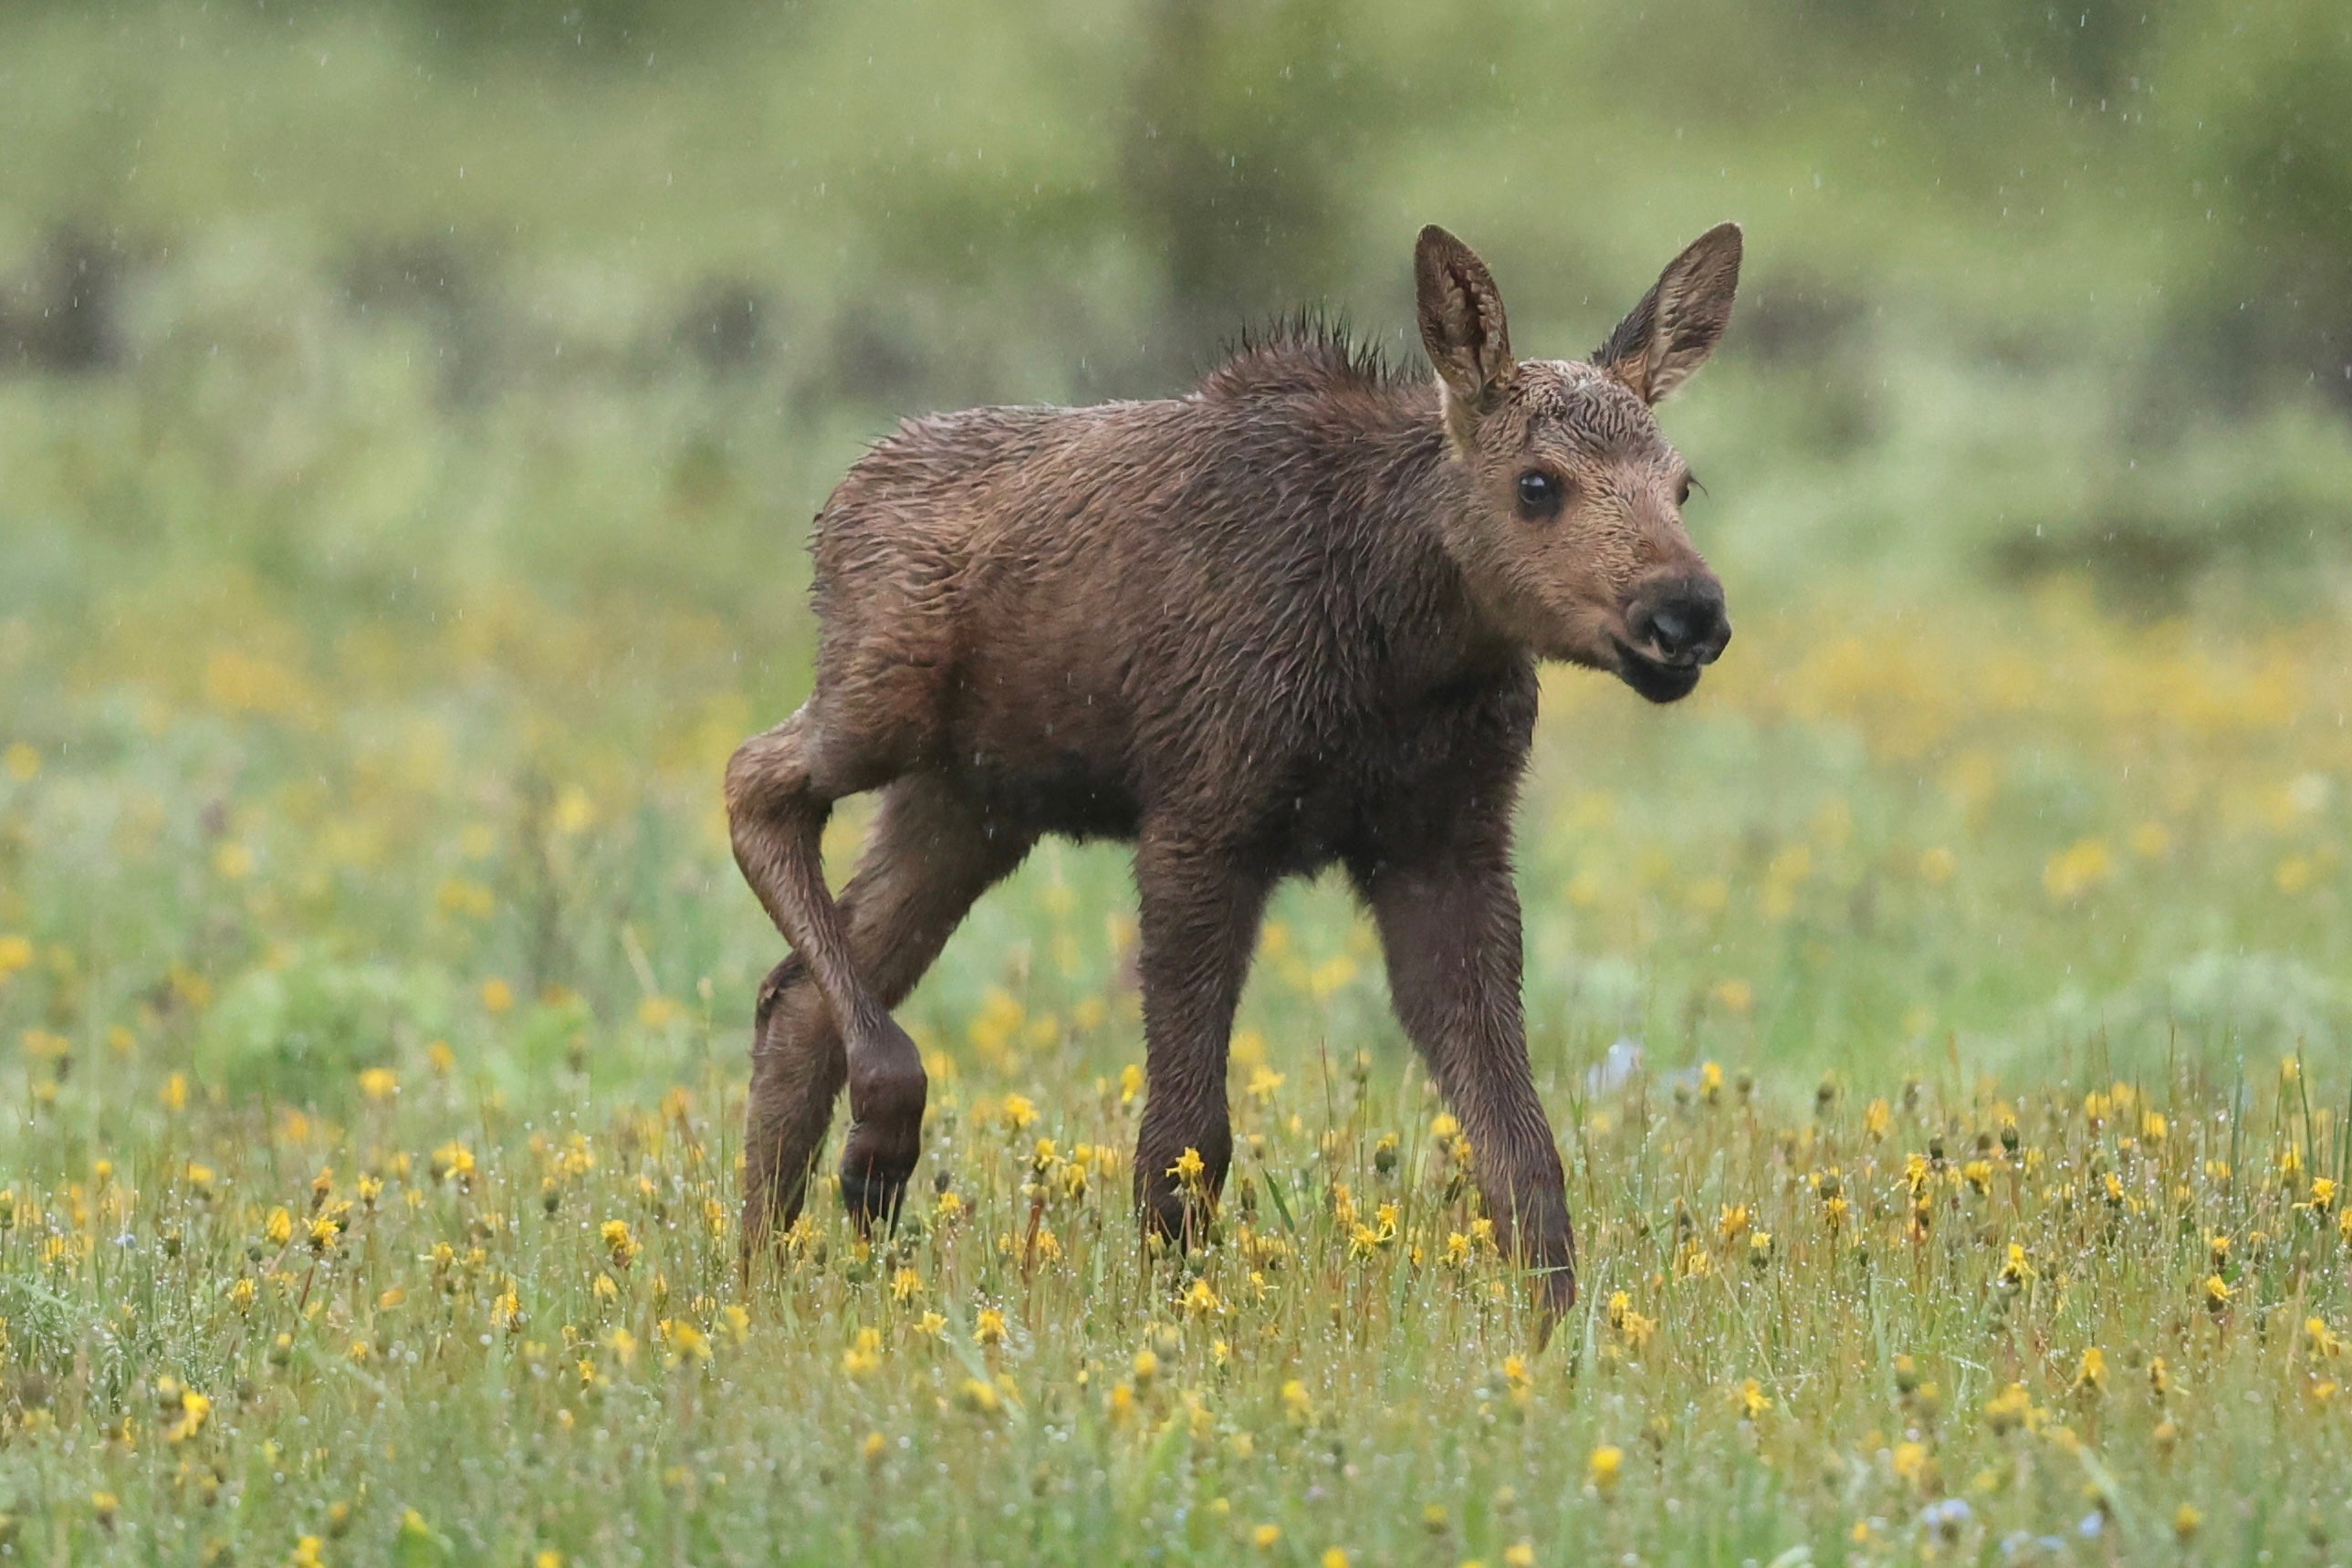 Calf Moose in rain